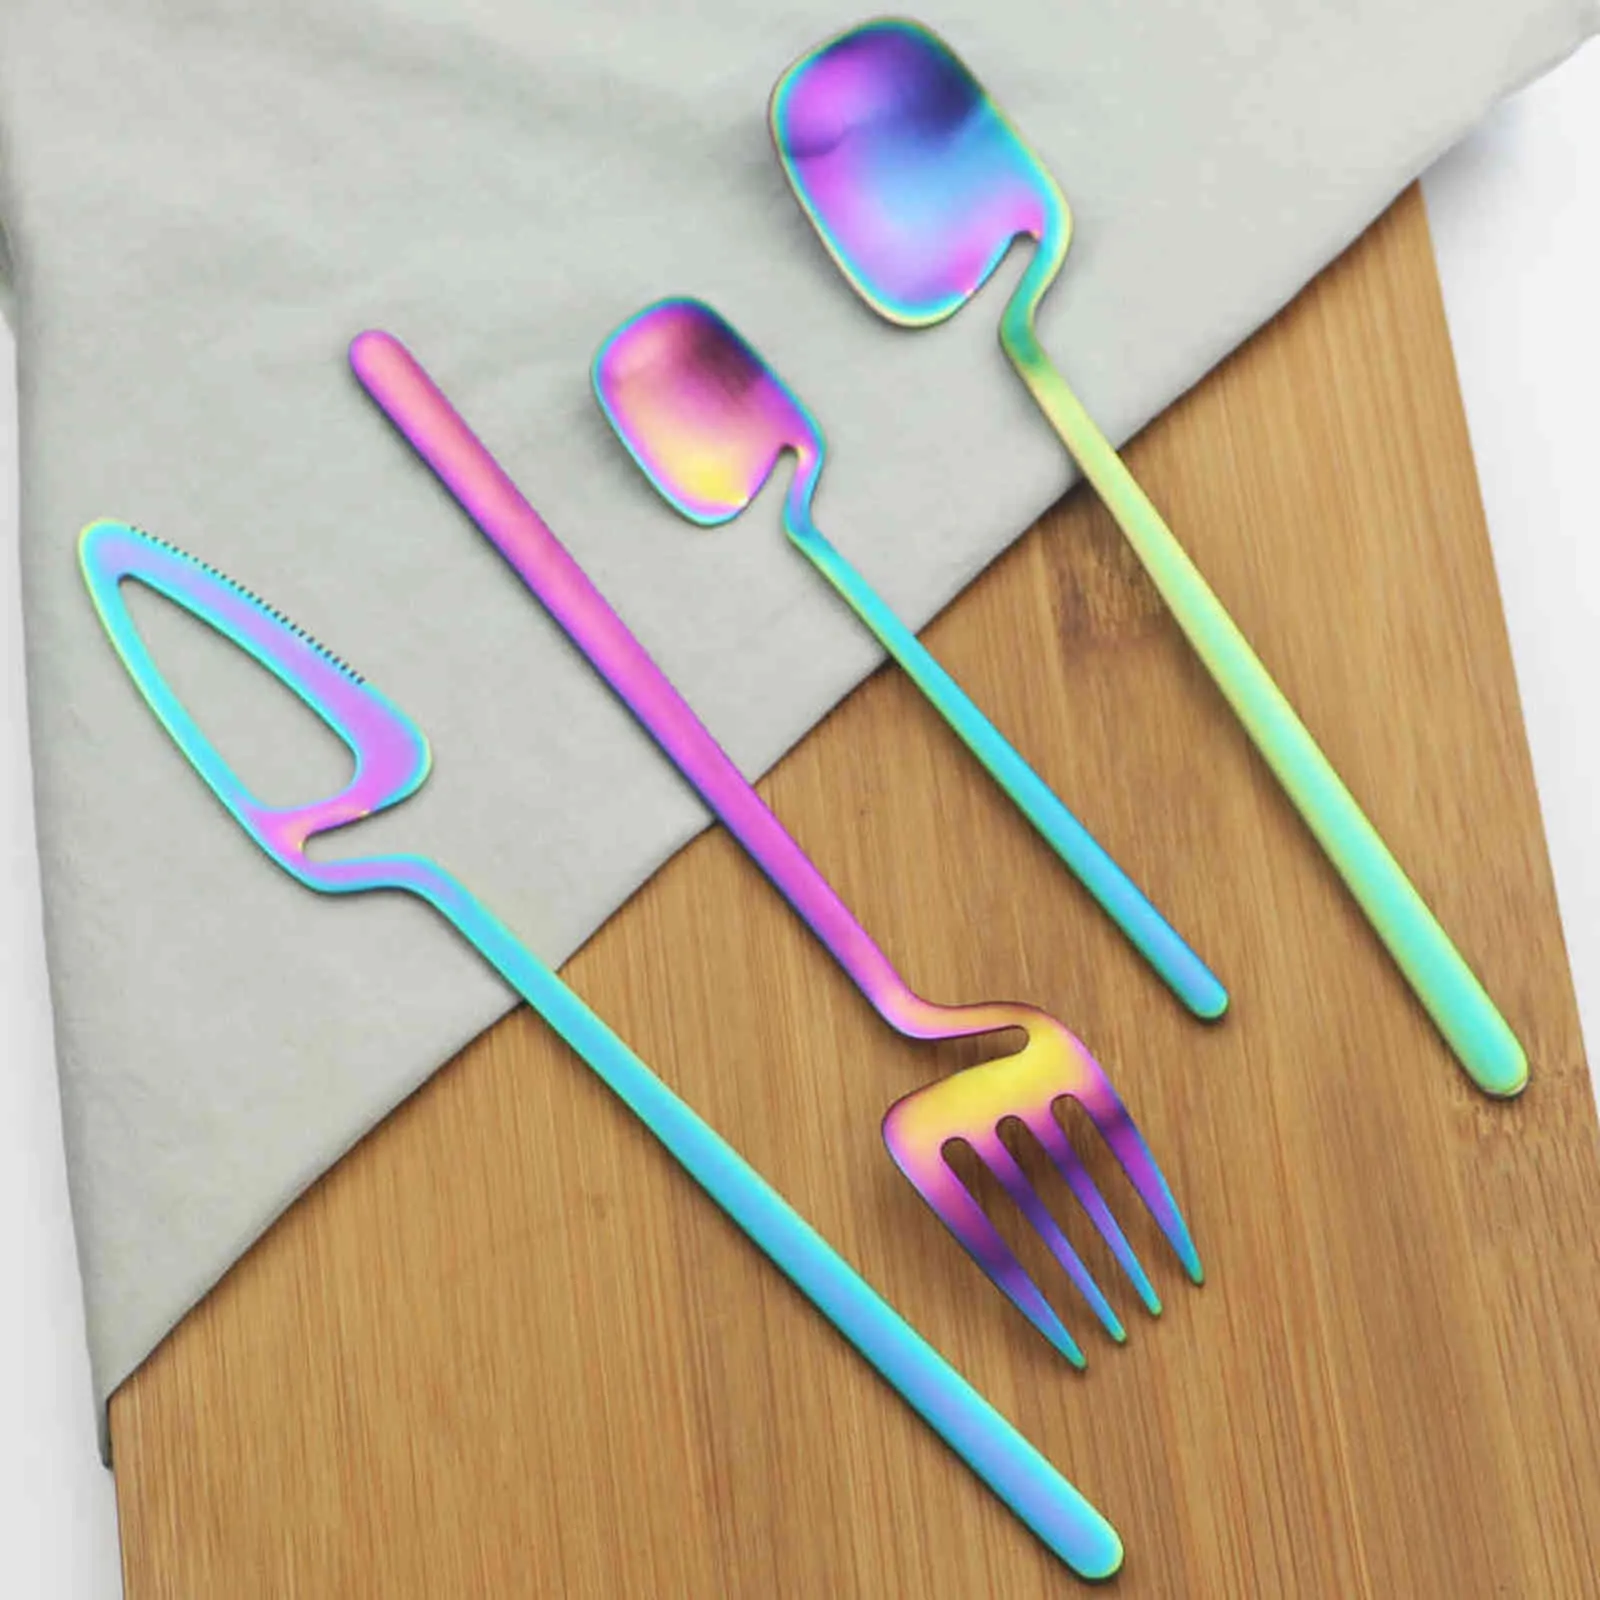 Cutlery Set Knives Fork Coffee Spoon Dinnerware 18/10 Stainless Steel Tableware Party Home Flatware Silverware 211112